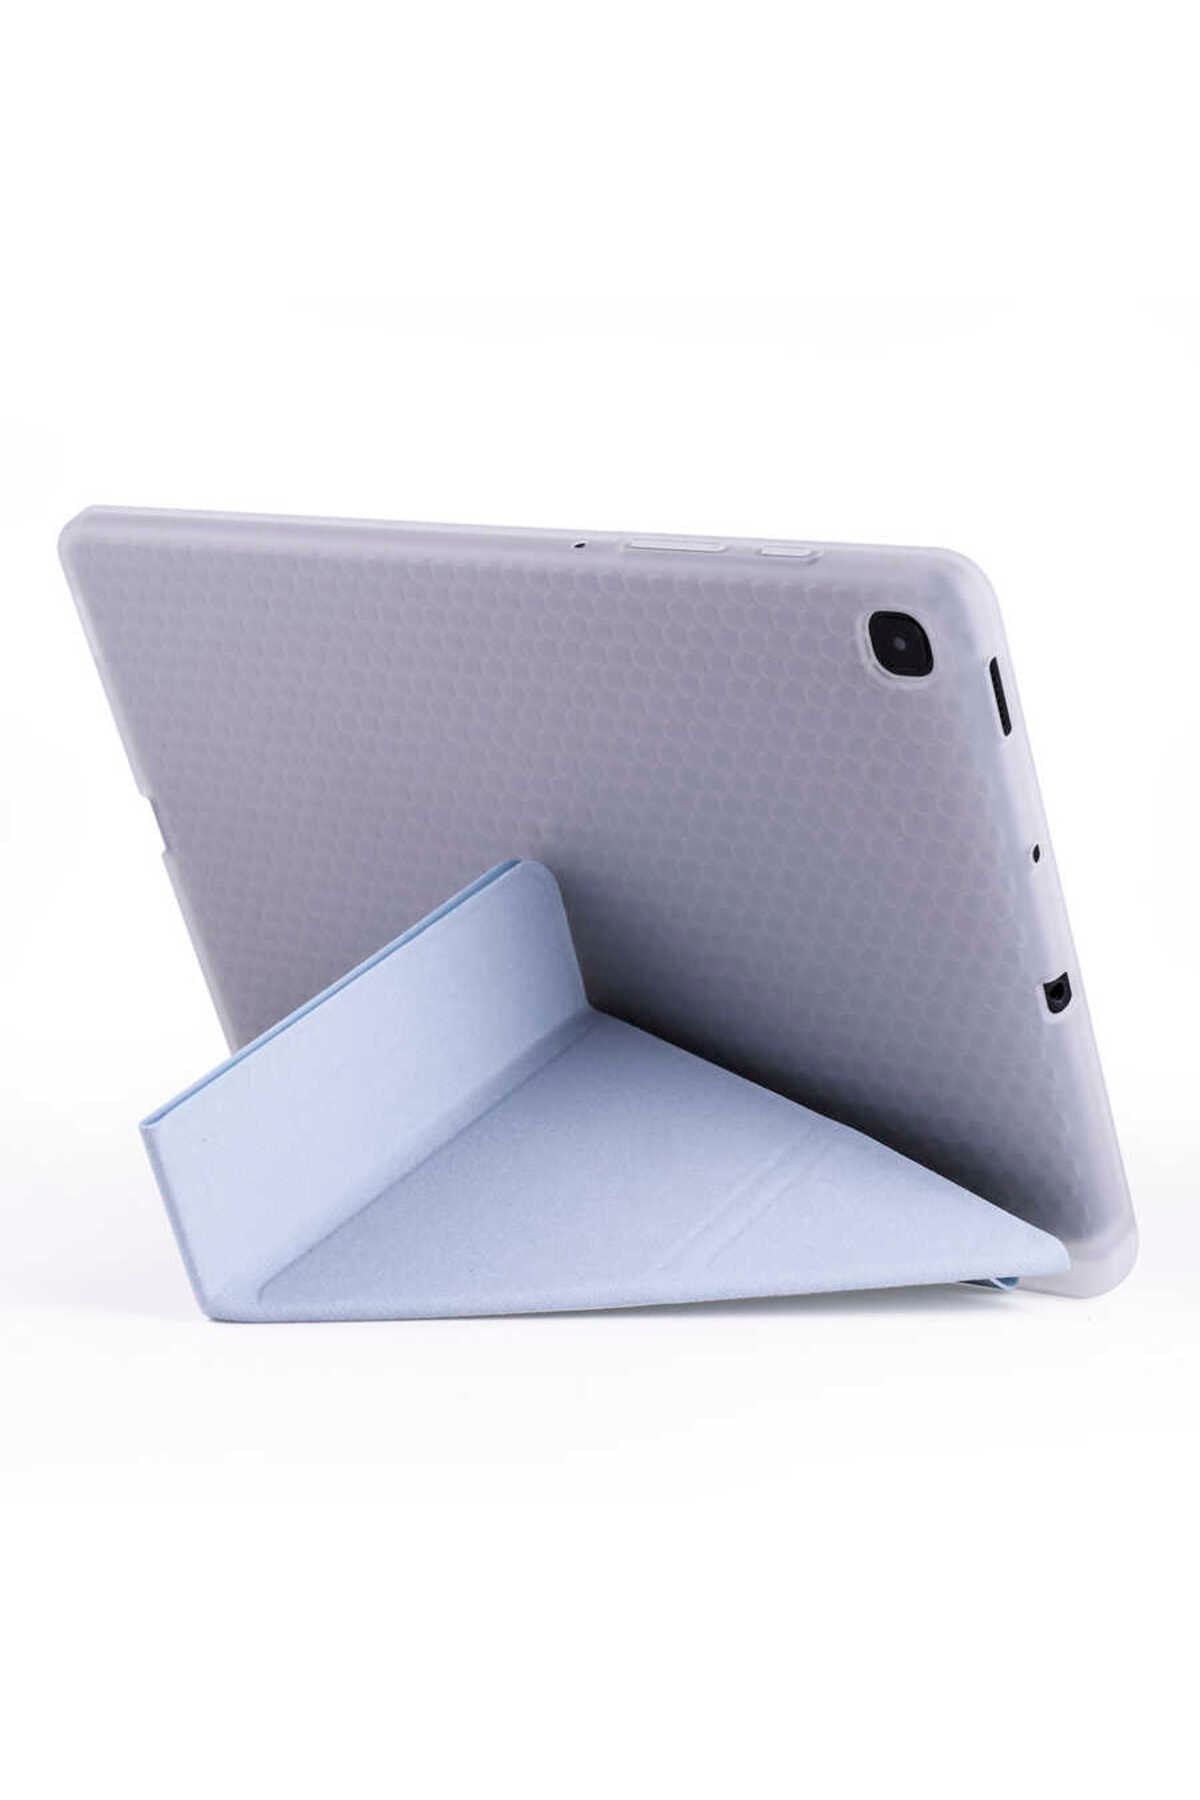 Gpack Samsung Galaxy Tab S6 Lite P610 Kılıf Standlı Katlanabilir Pu Silikon tf1 Yeşil